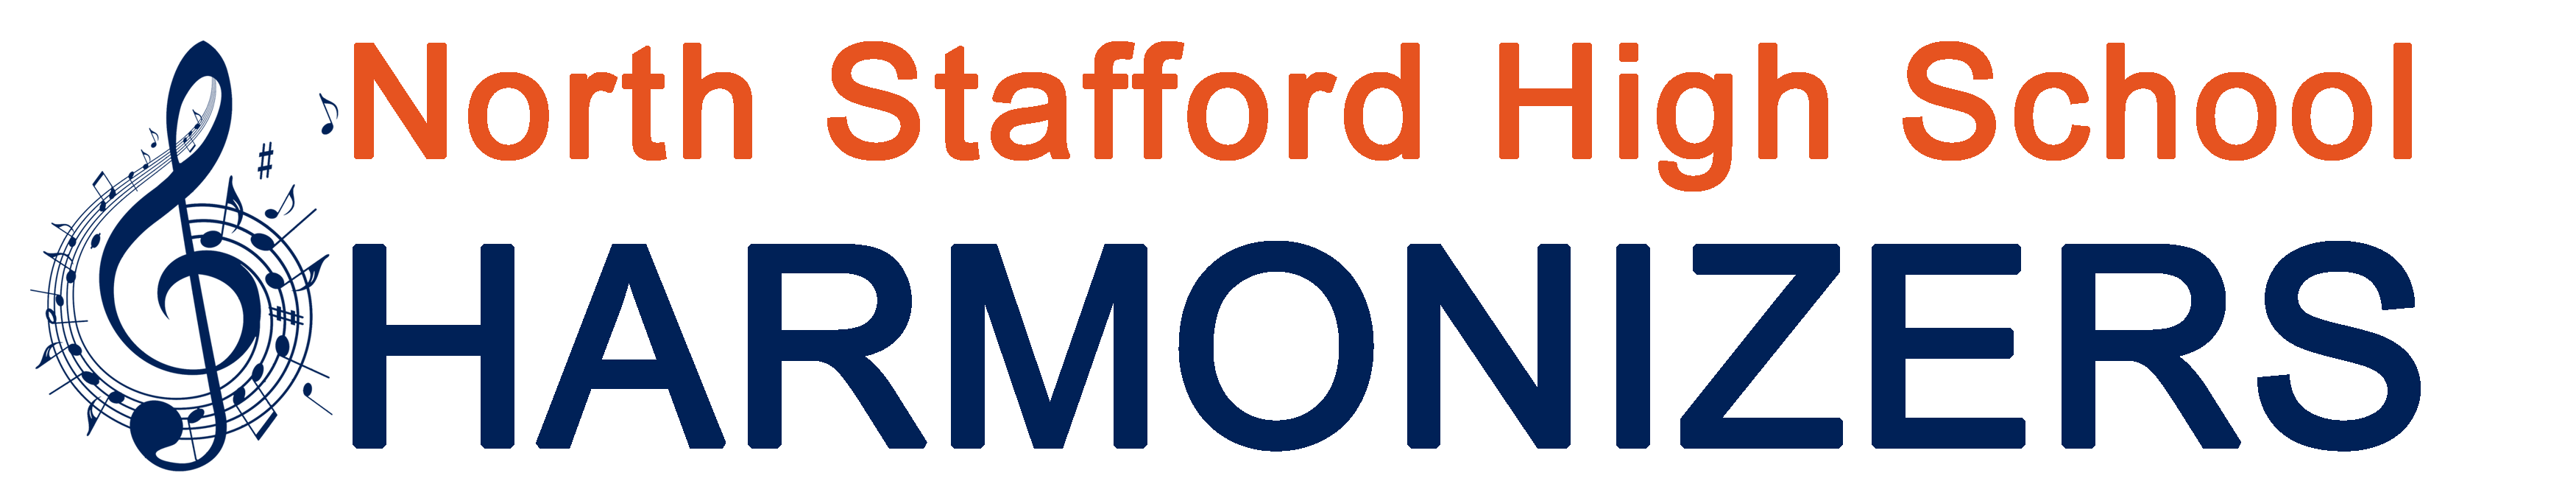 North Stafford High School Harmonizers Logo Simple